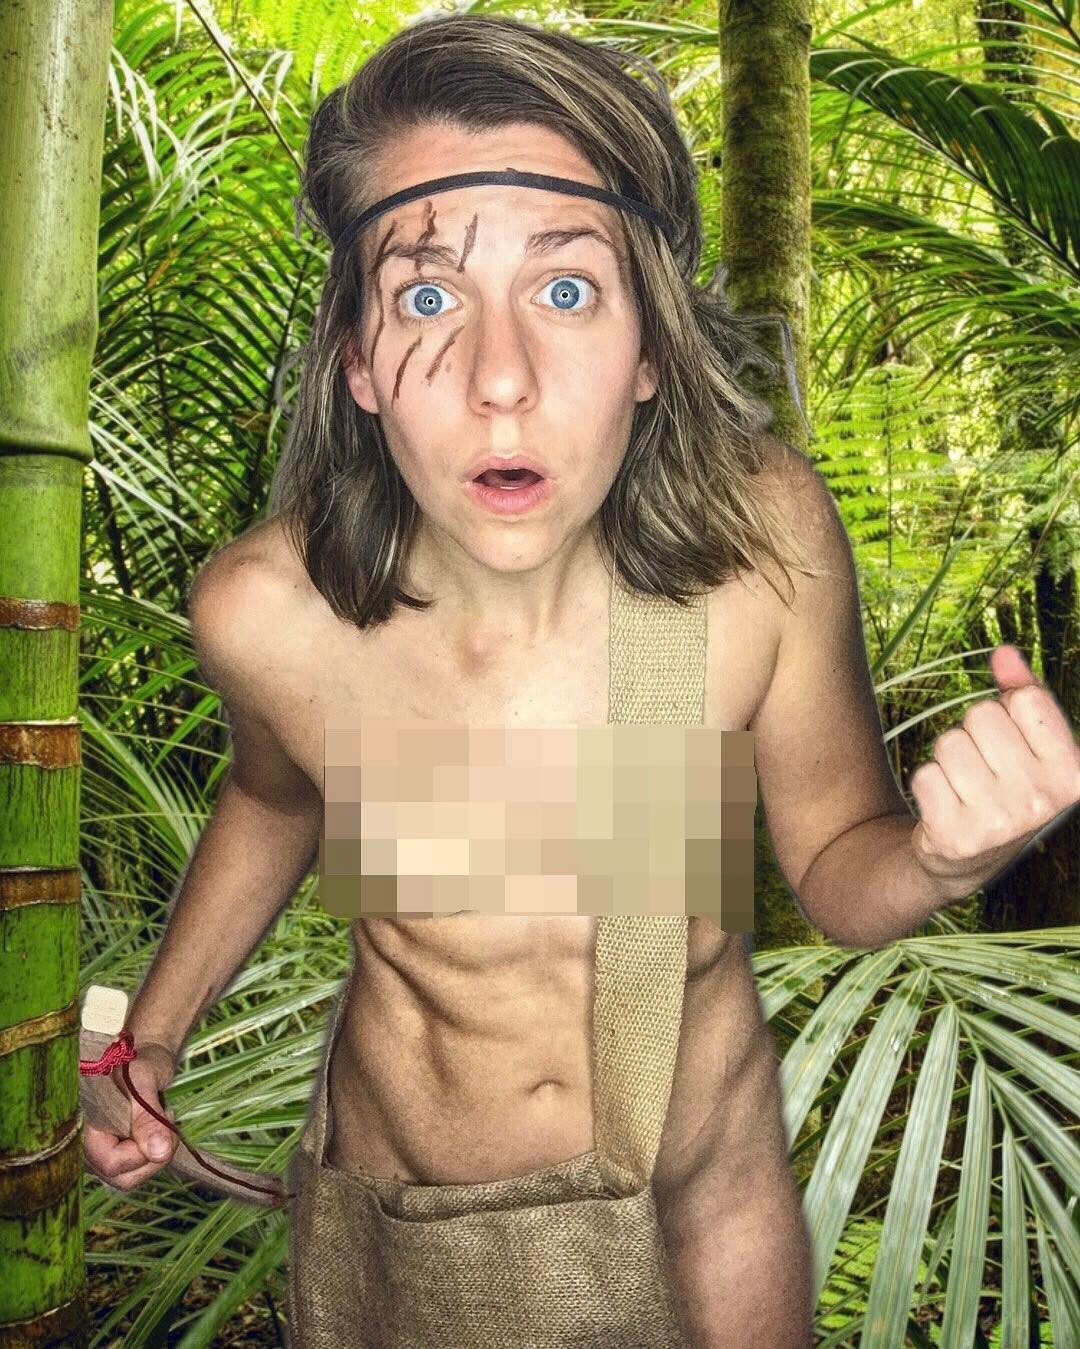 Ali spagnola naked - 🧡 Ali Spagnola - Nude Selfies! 